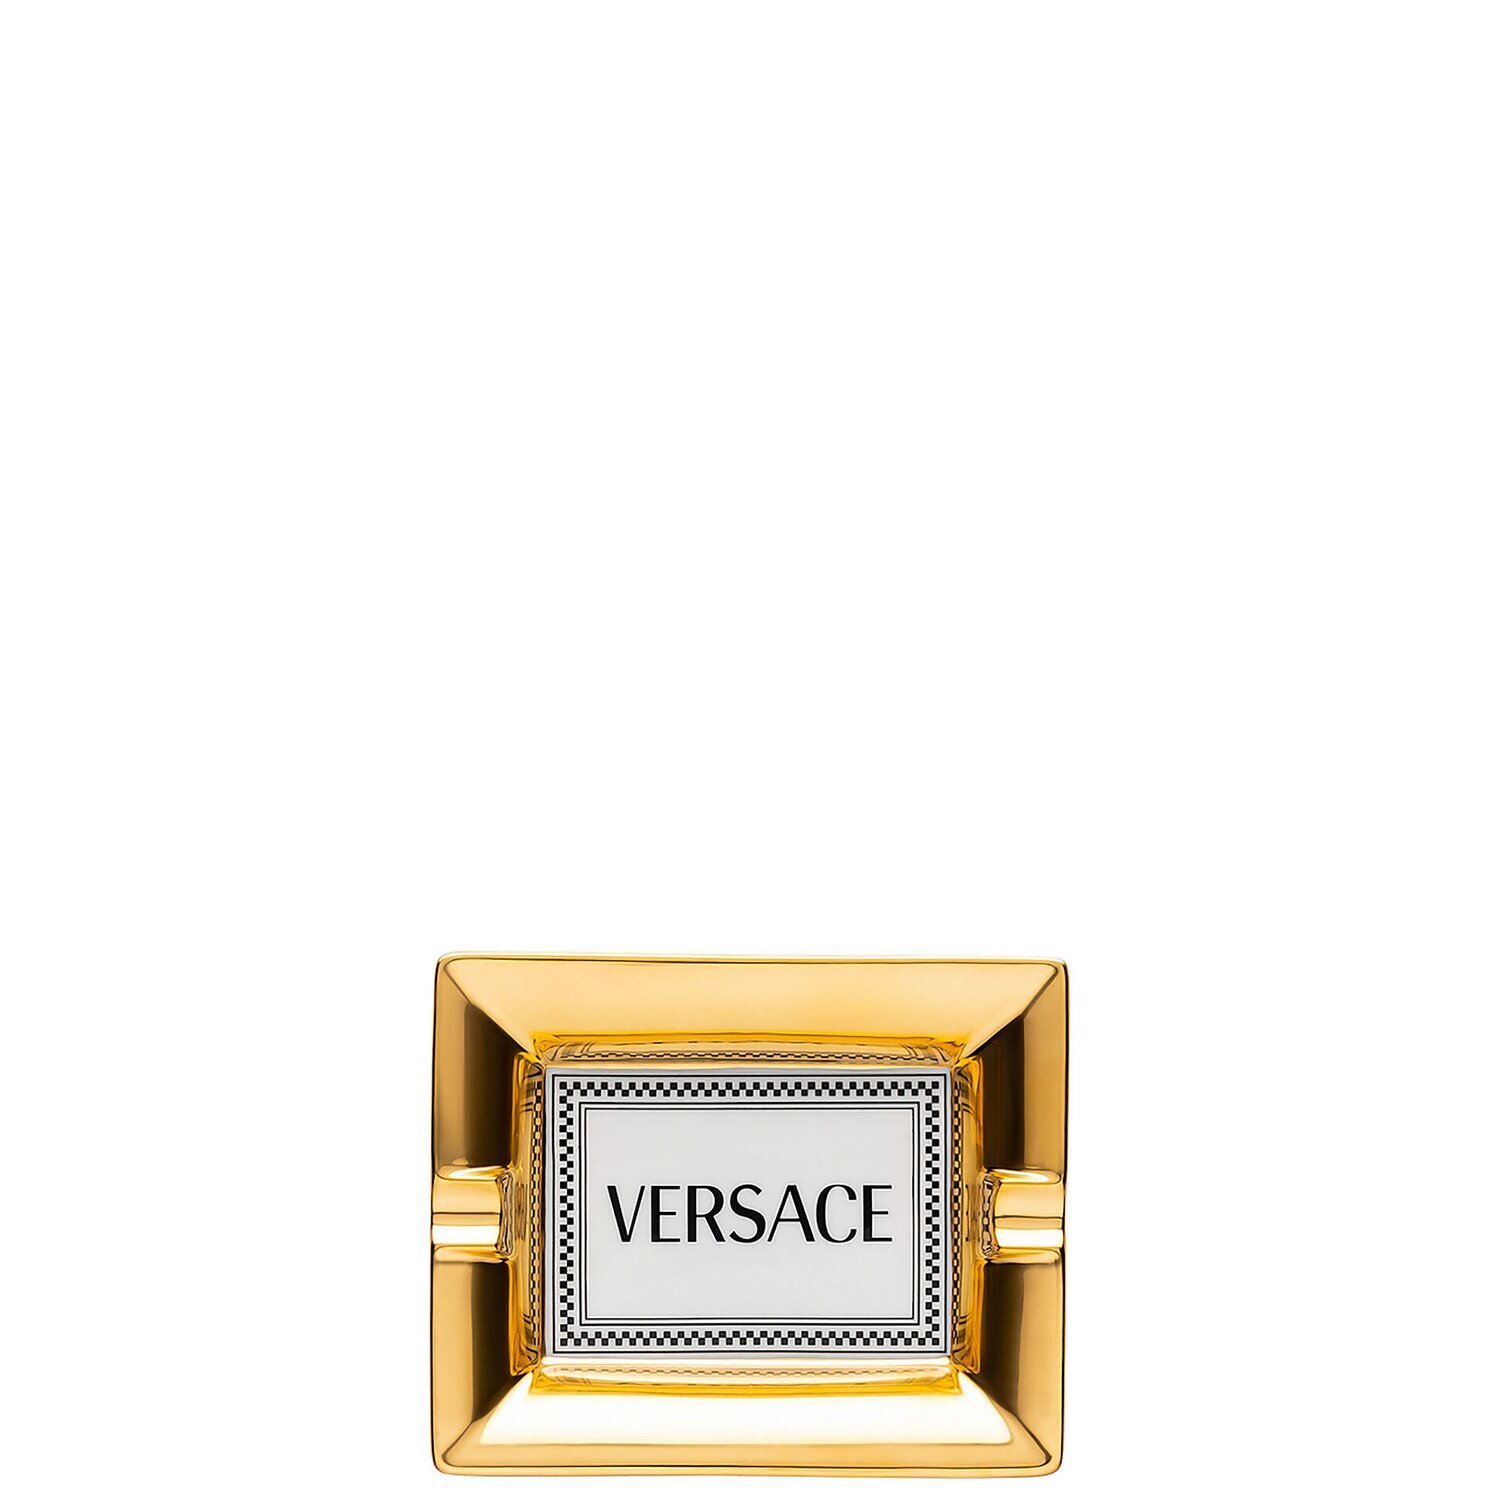 Versace Medusa Rhapsody Ashtray 5 Inch